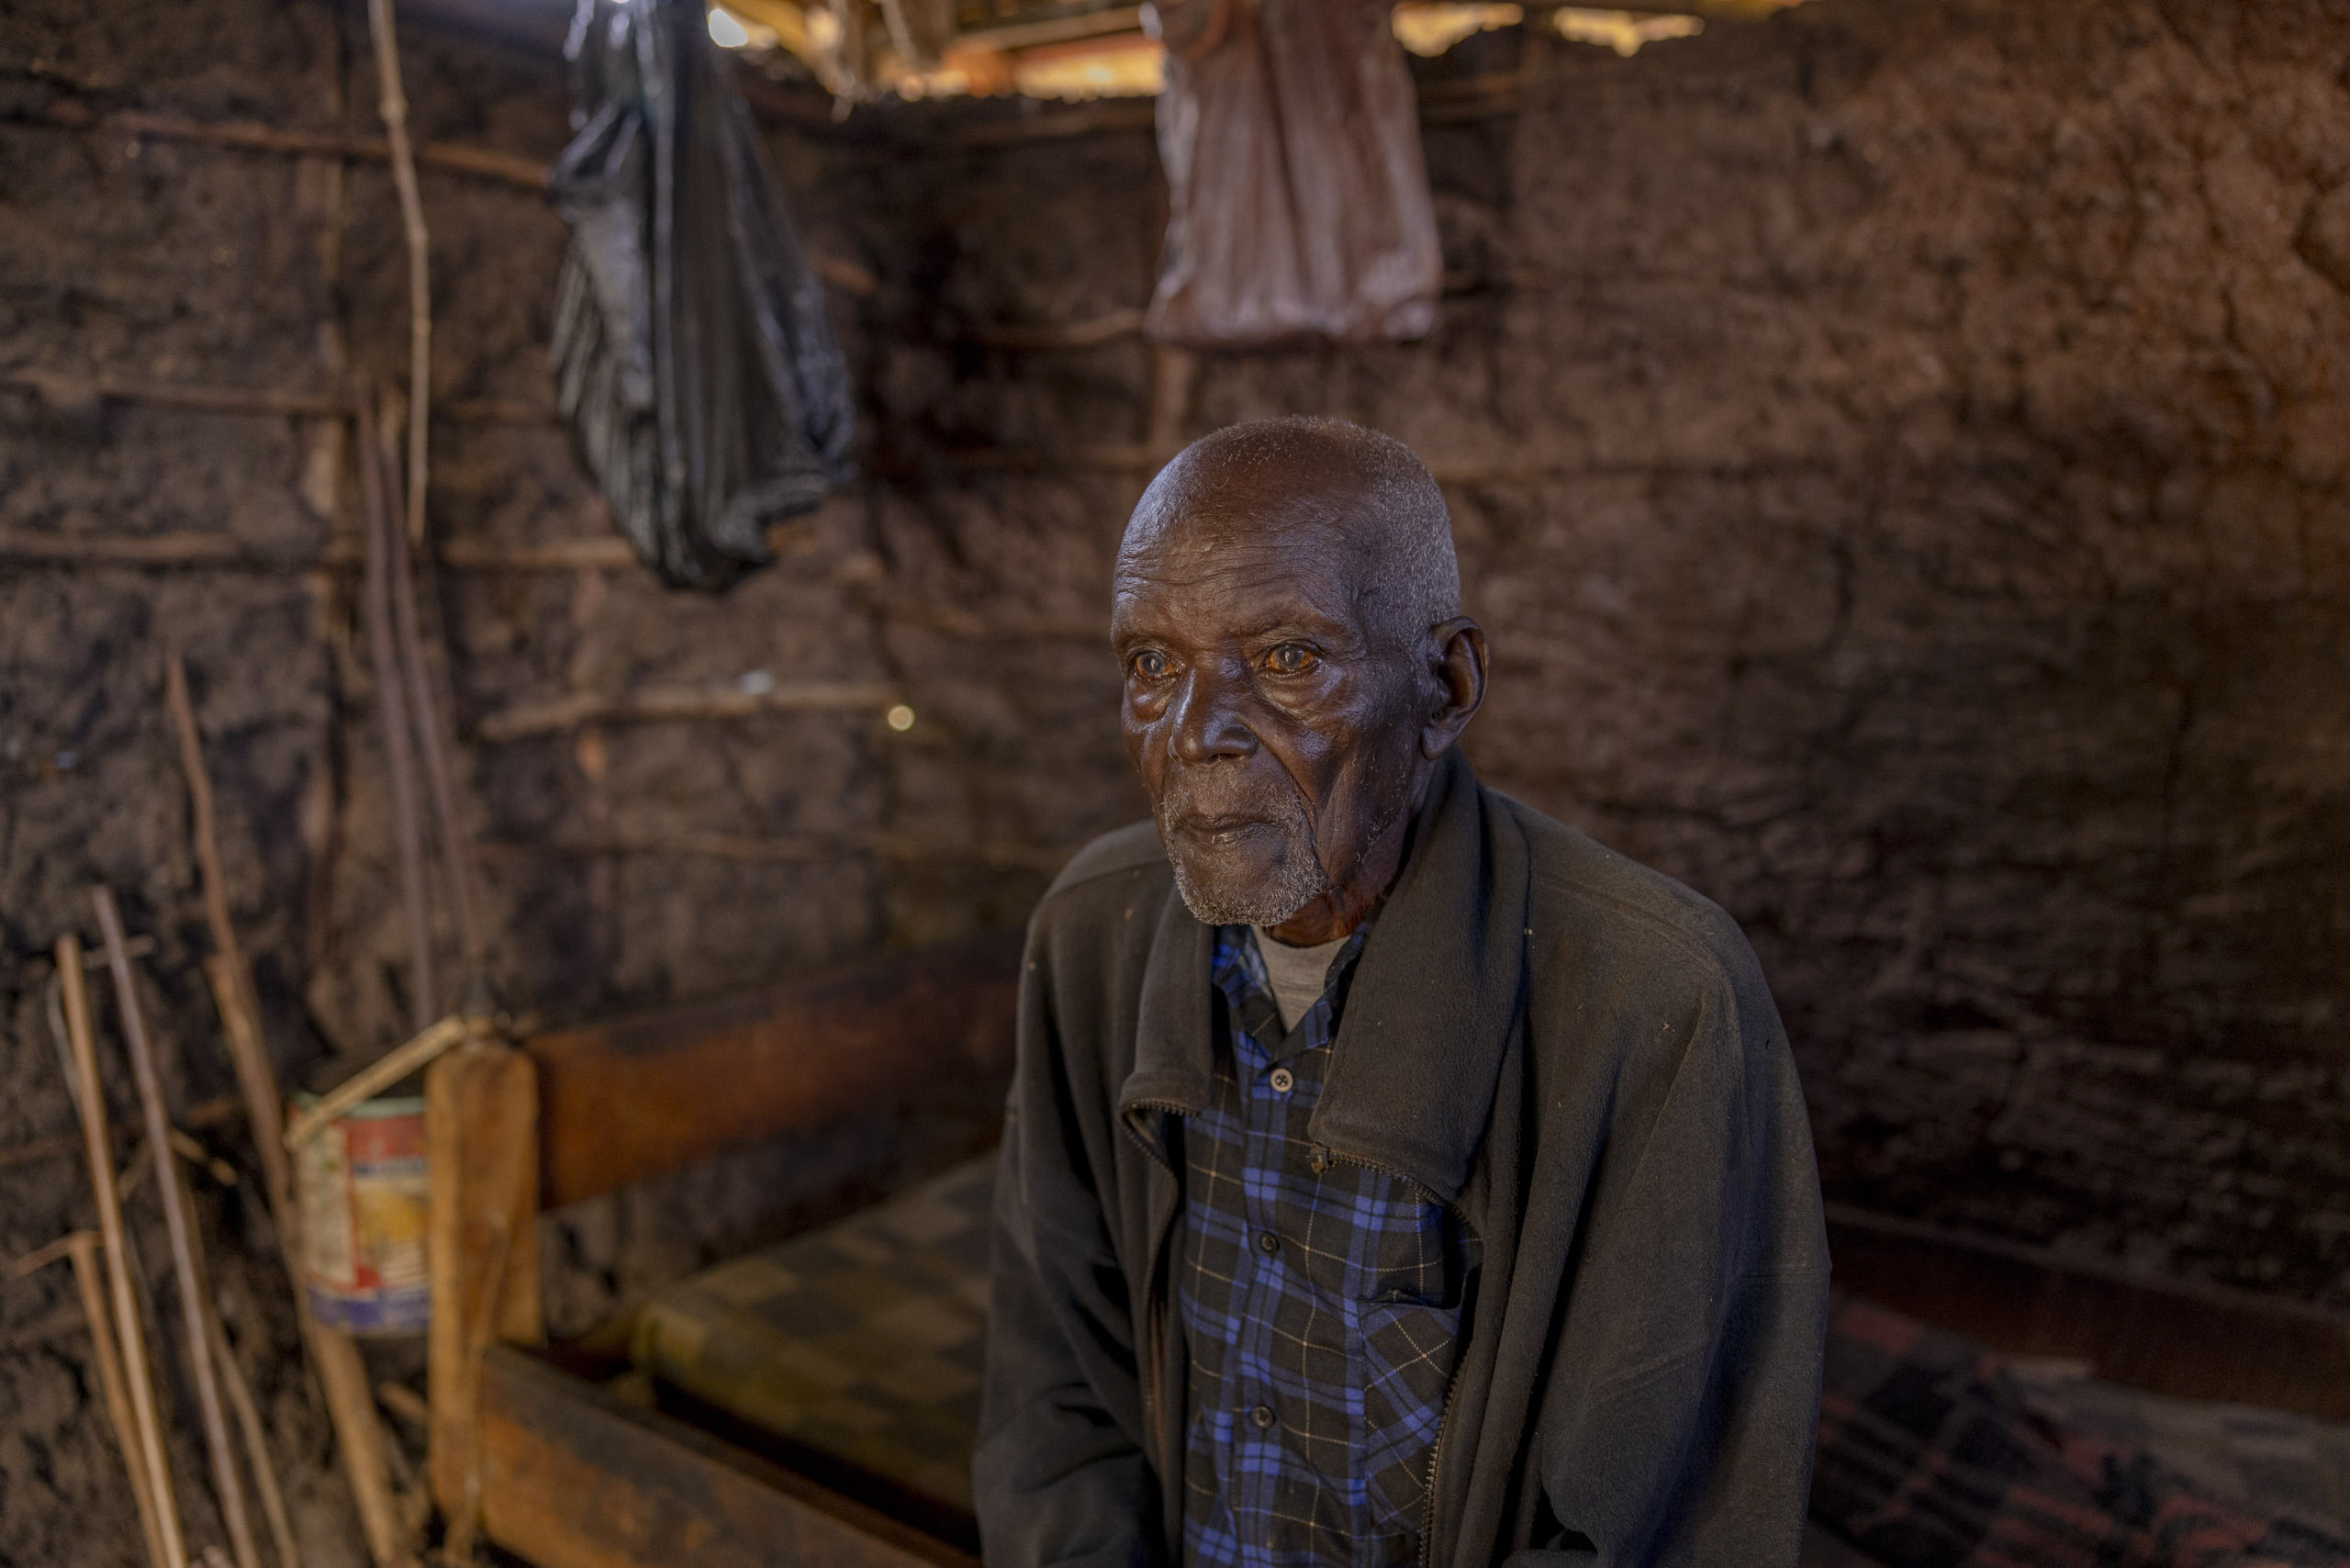 Ein älterer Mann mit nachdenklichem Gesichtsausdruck sitzt auf einer Holzbank in einer rustikalen Hütte mit Wänden aus Stöcken und Lehm. Seine Umgebung ist nur minimal möbliert und die Beleuchtung ist schwach. © Fotografie Tomas Rodriguez